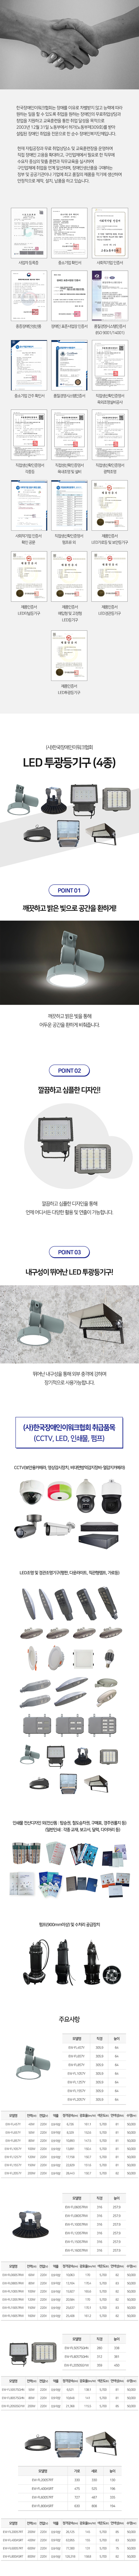 (사)한국장애인이워크협회(21종)_LED) LED 투광등기구 (4종)_상세.jpg